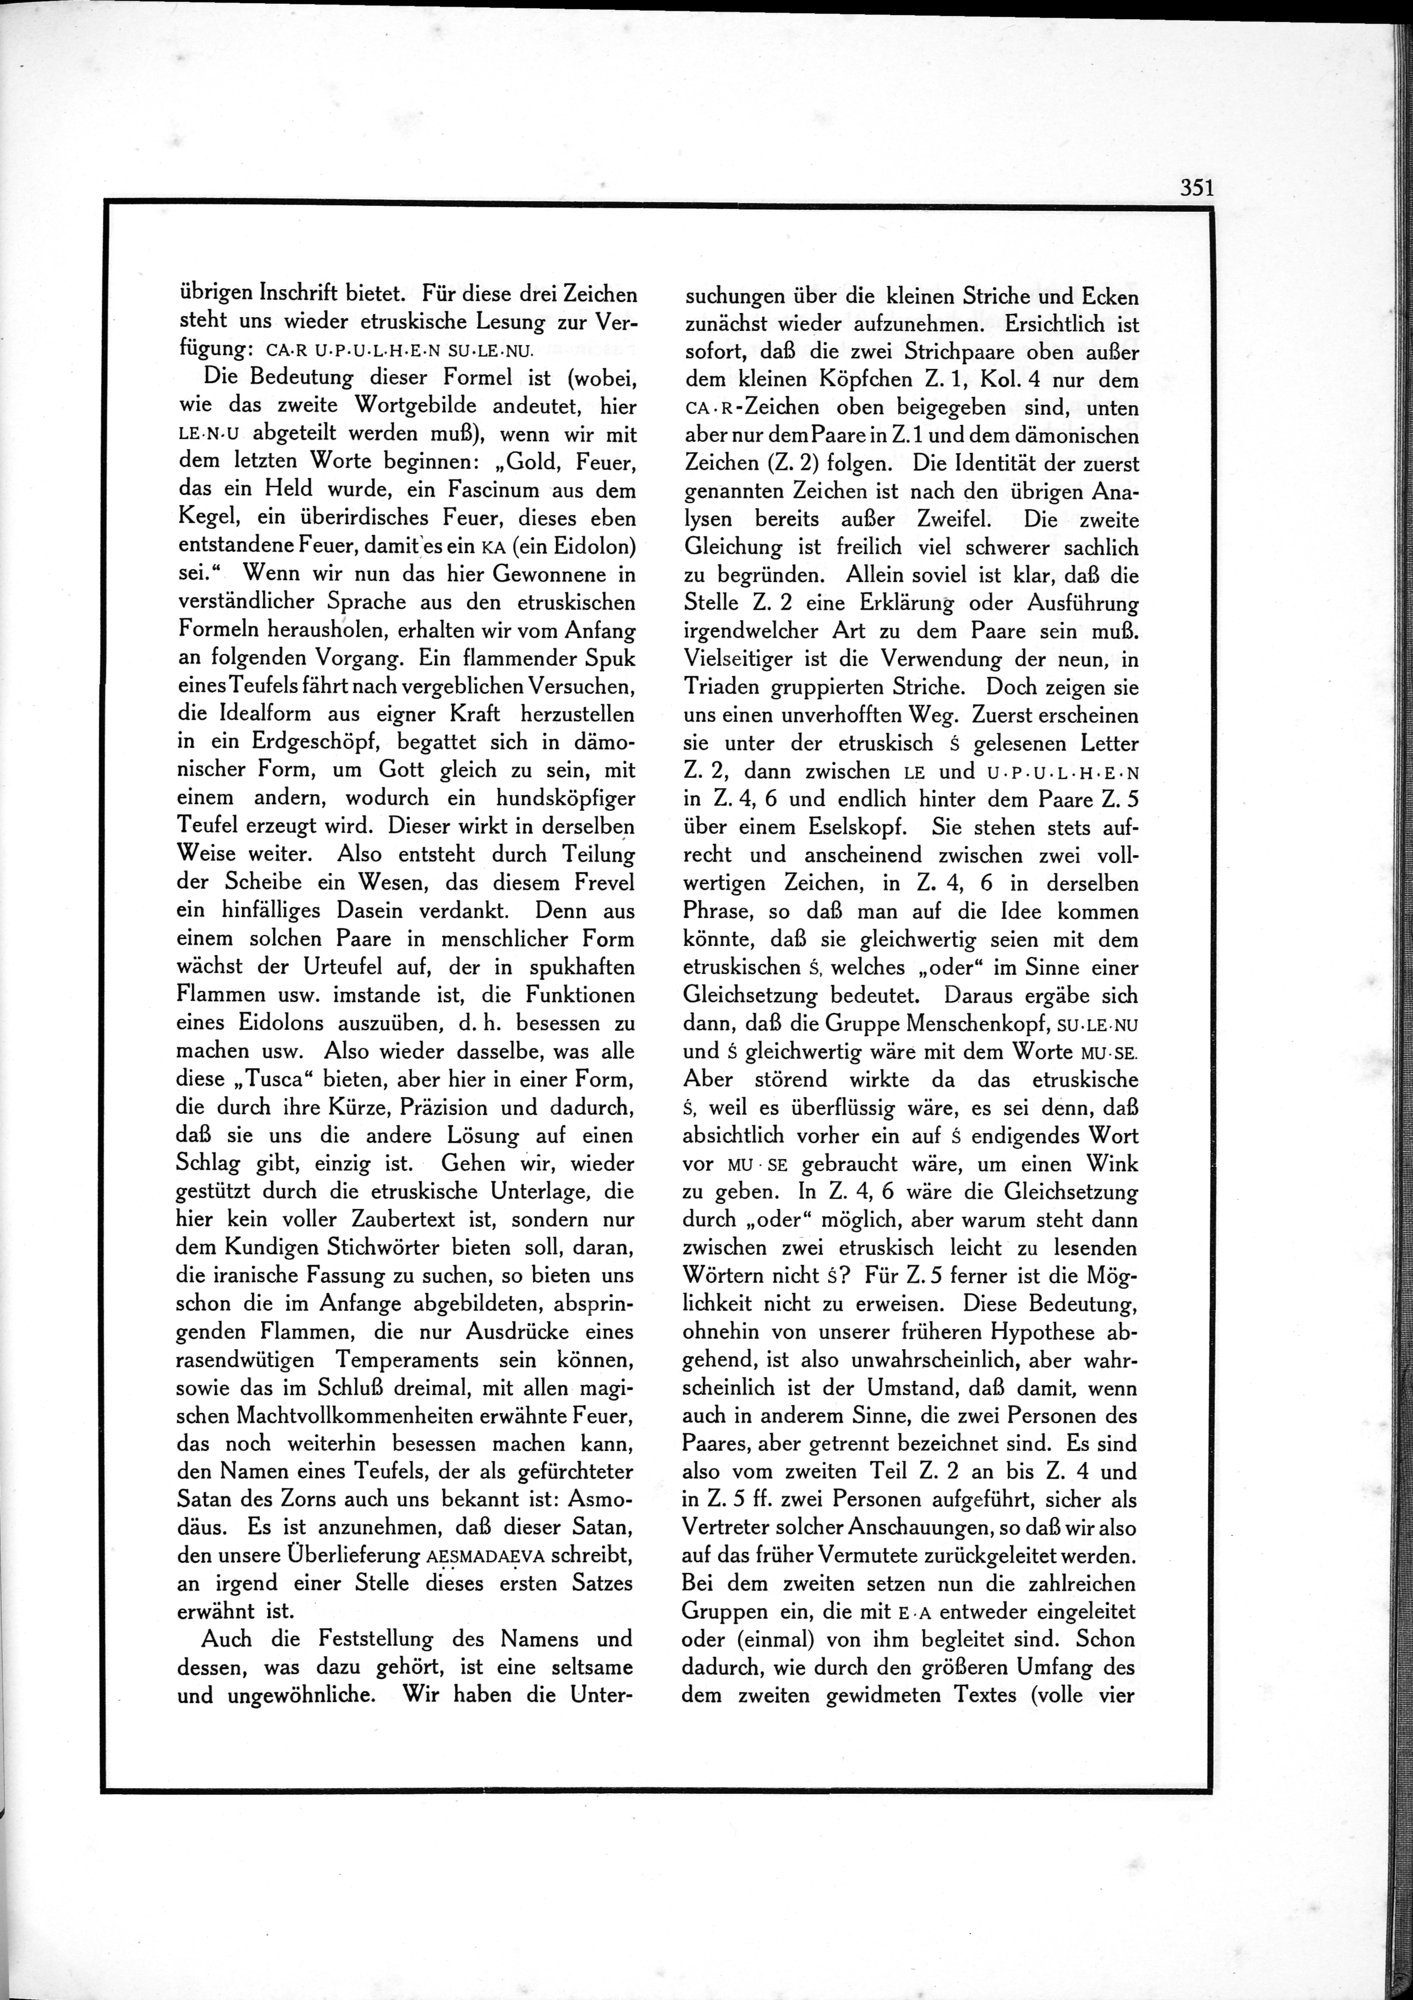 Die Teufel des Avesta und Ihre Beziehungen zur Ikonographie des Buddhismus Zentral-Asiens : vol.1 / Page 355 (Grayscale High Resolution Image)